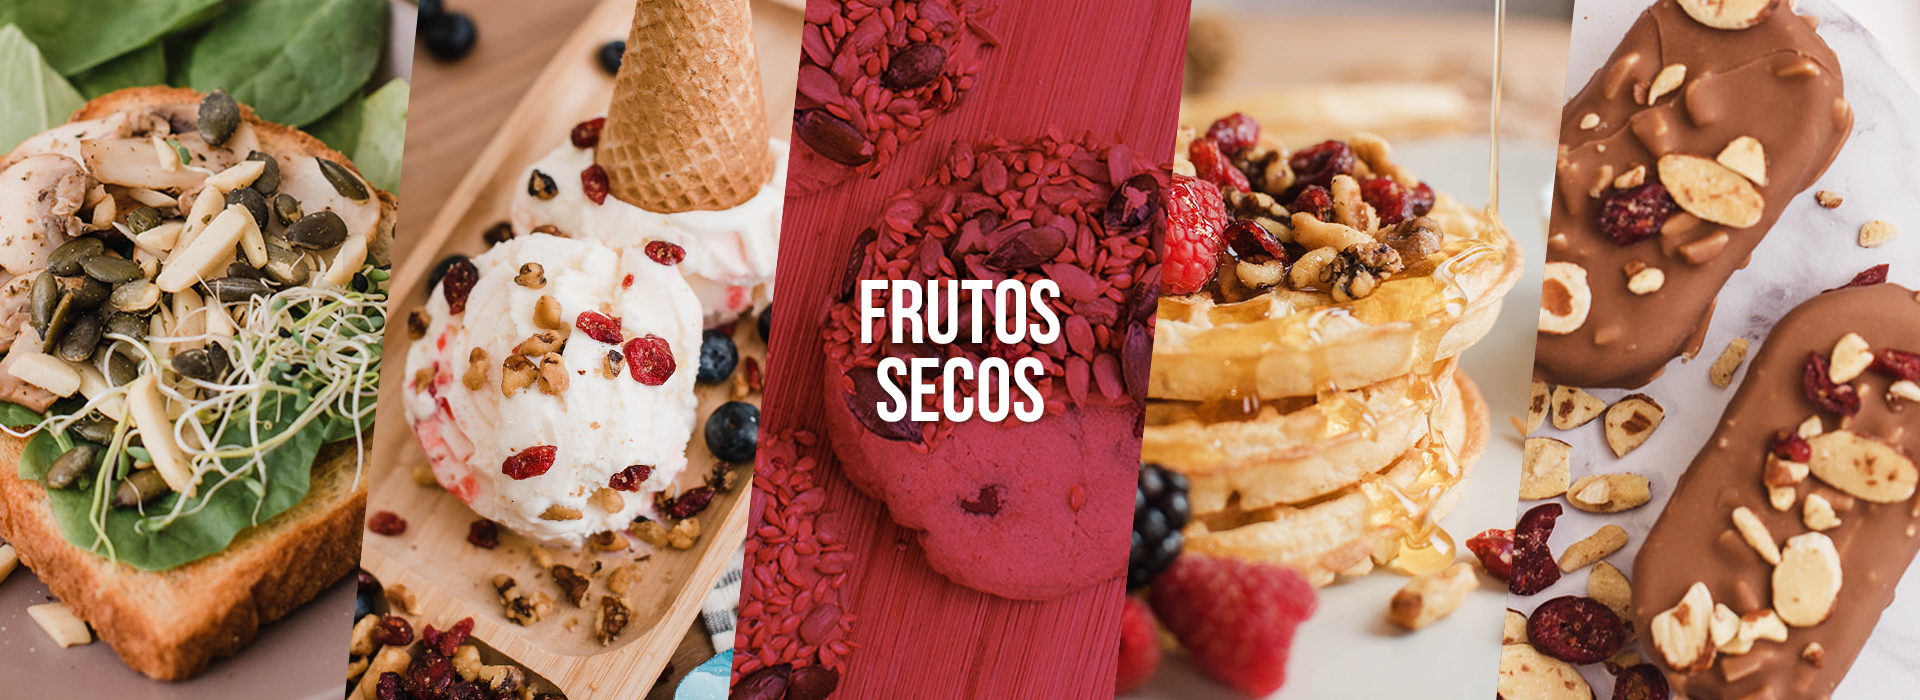 FoodService - Frutos secos